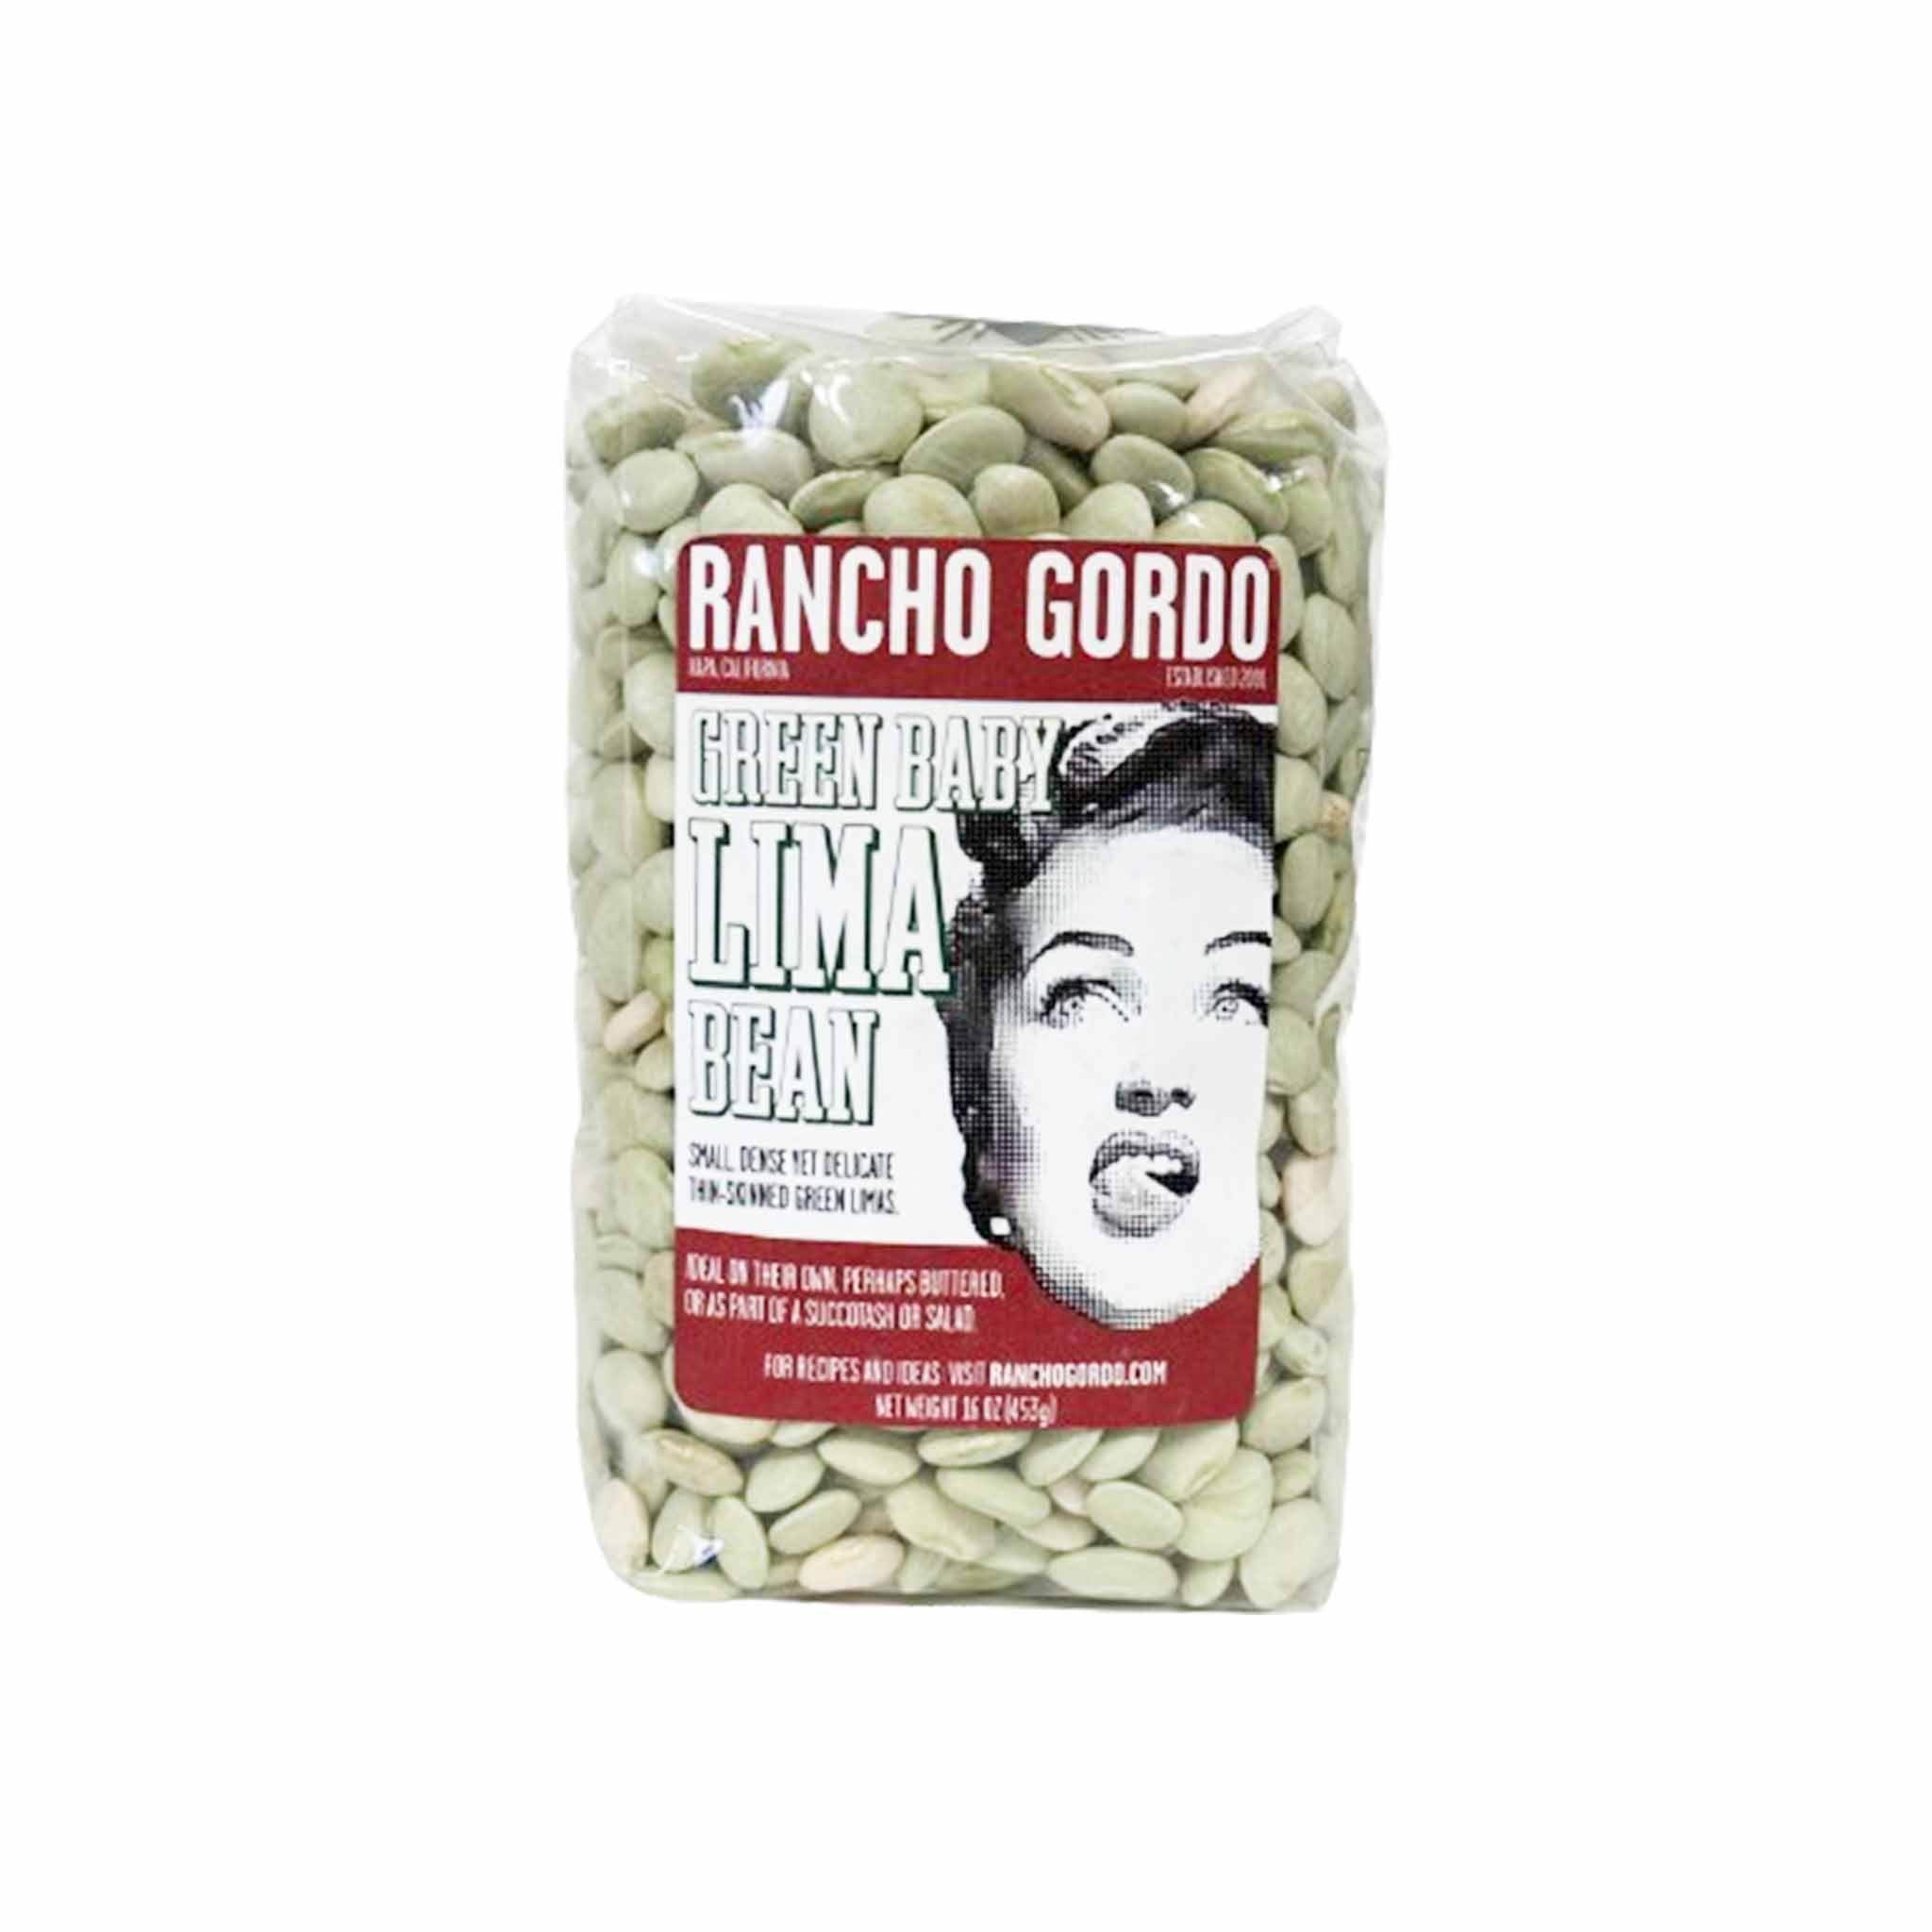 RANCHO GORDO GREEN BABY LIMA BEANS 1 lb